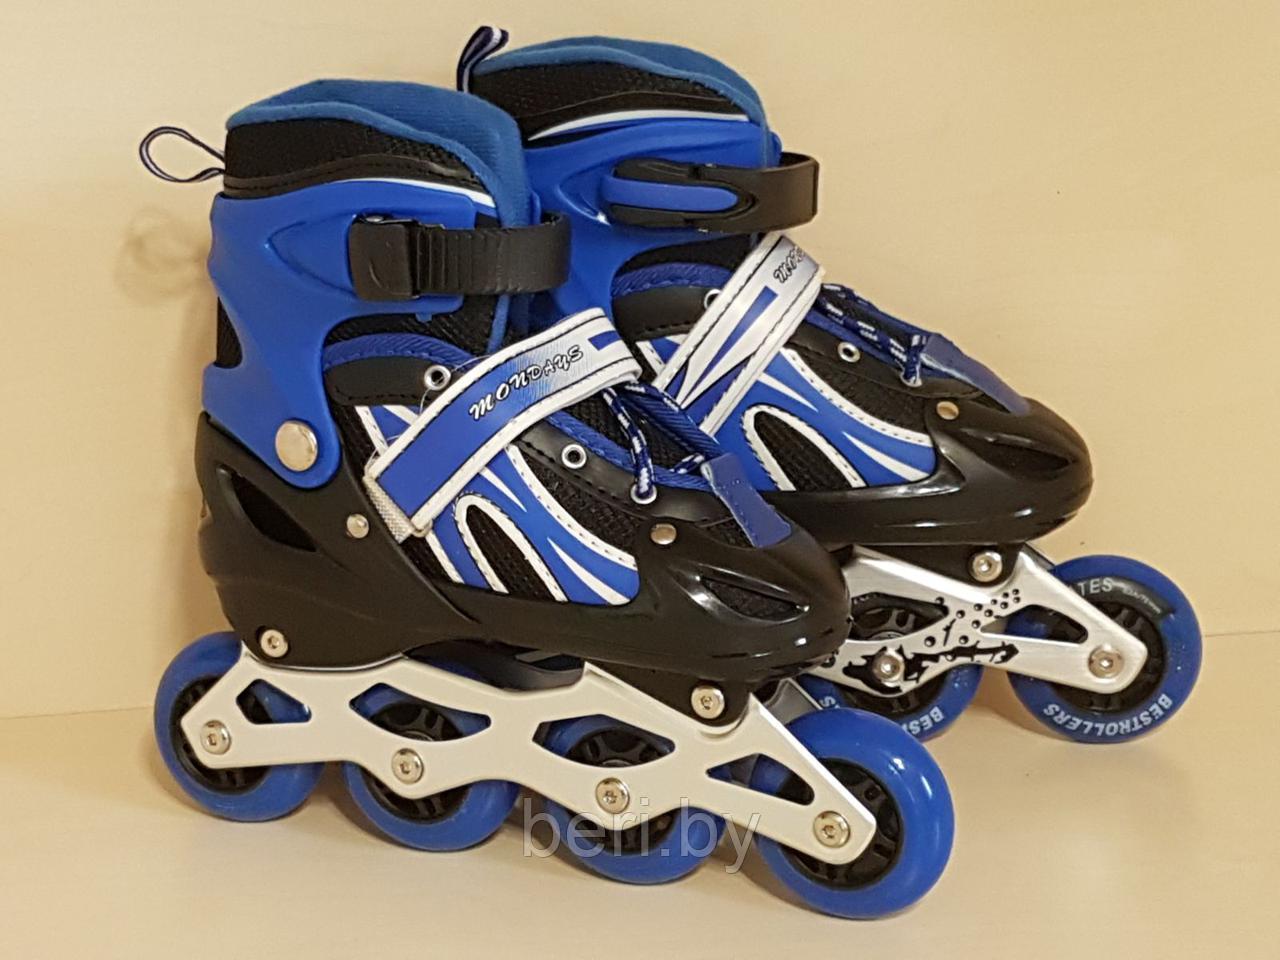 Ролики, роликовые коньки детские раздвижные S размер 29-33, полиуретановые колеса, синие 